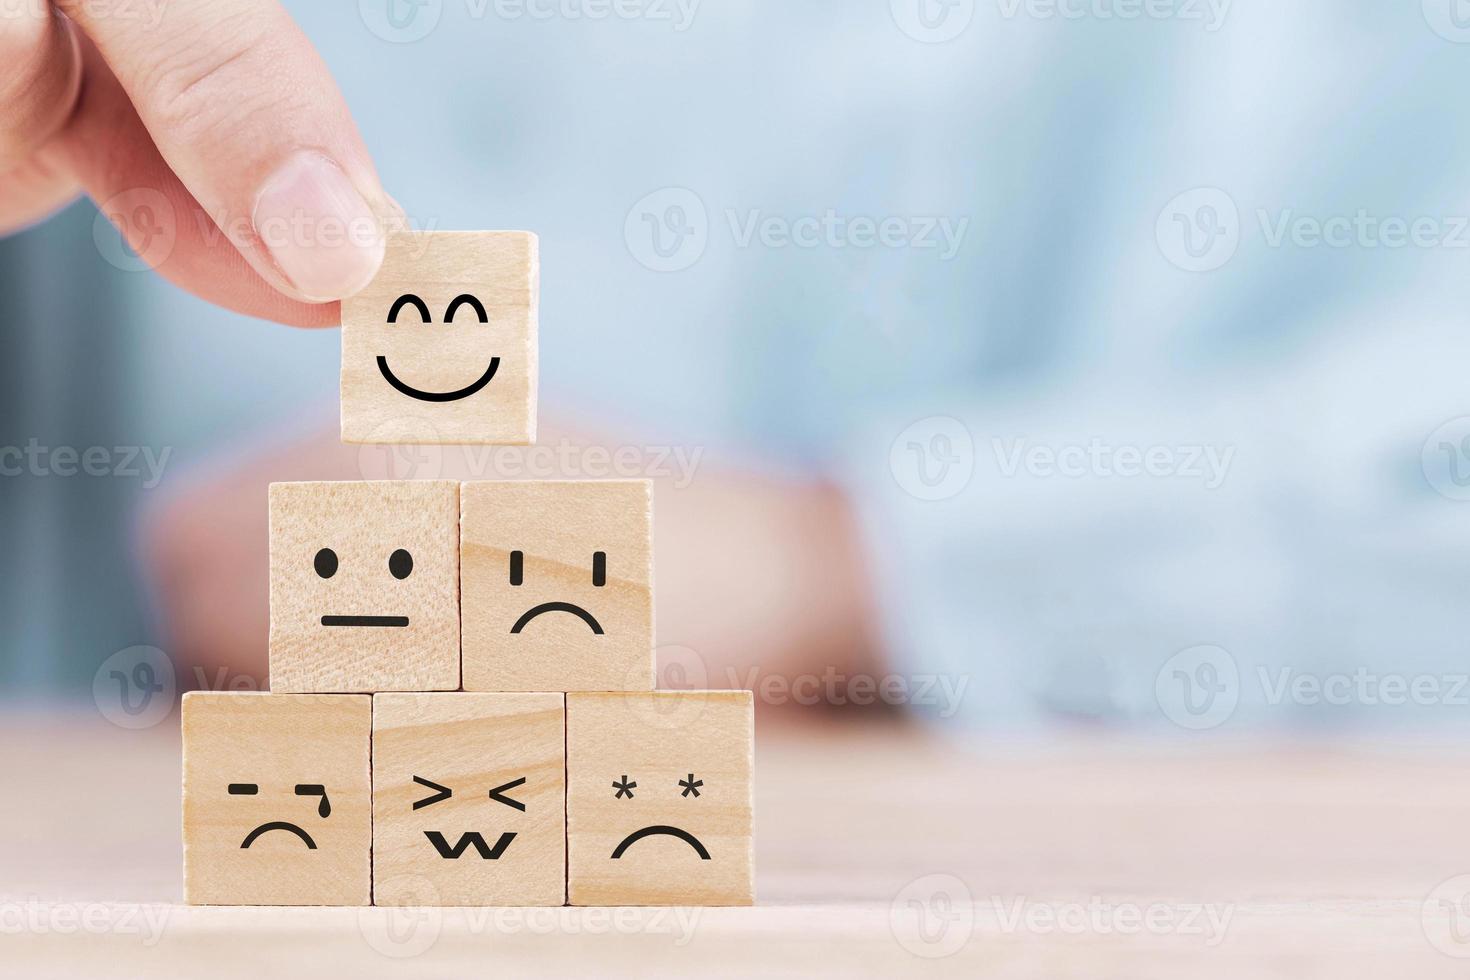 geschäftsmann wählt ein lächeln emoticon symbole stellen ein glückliches symbol auf holzblock, dienstleistungen und kundenzufriedenheitsumfragekonzept dar foto